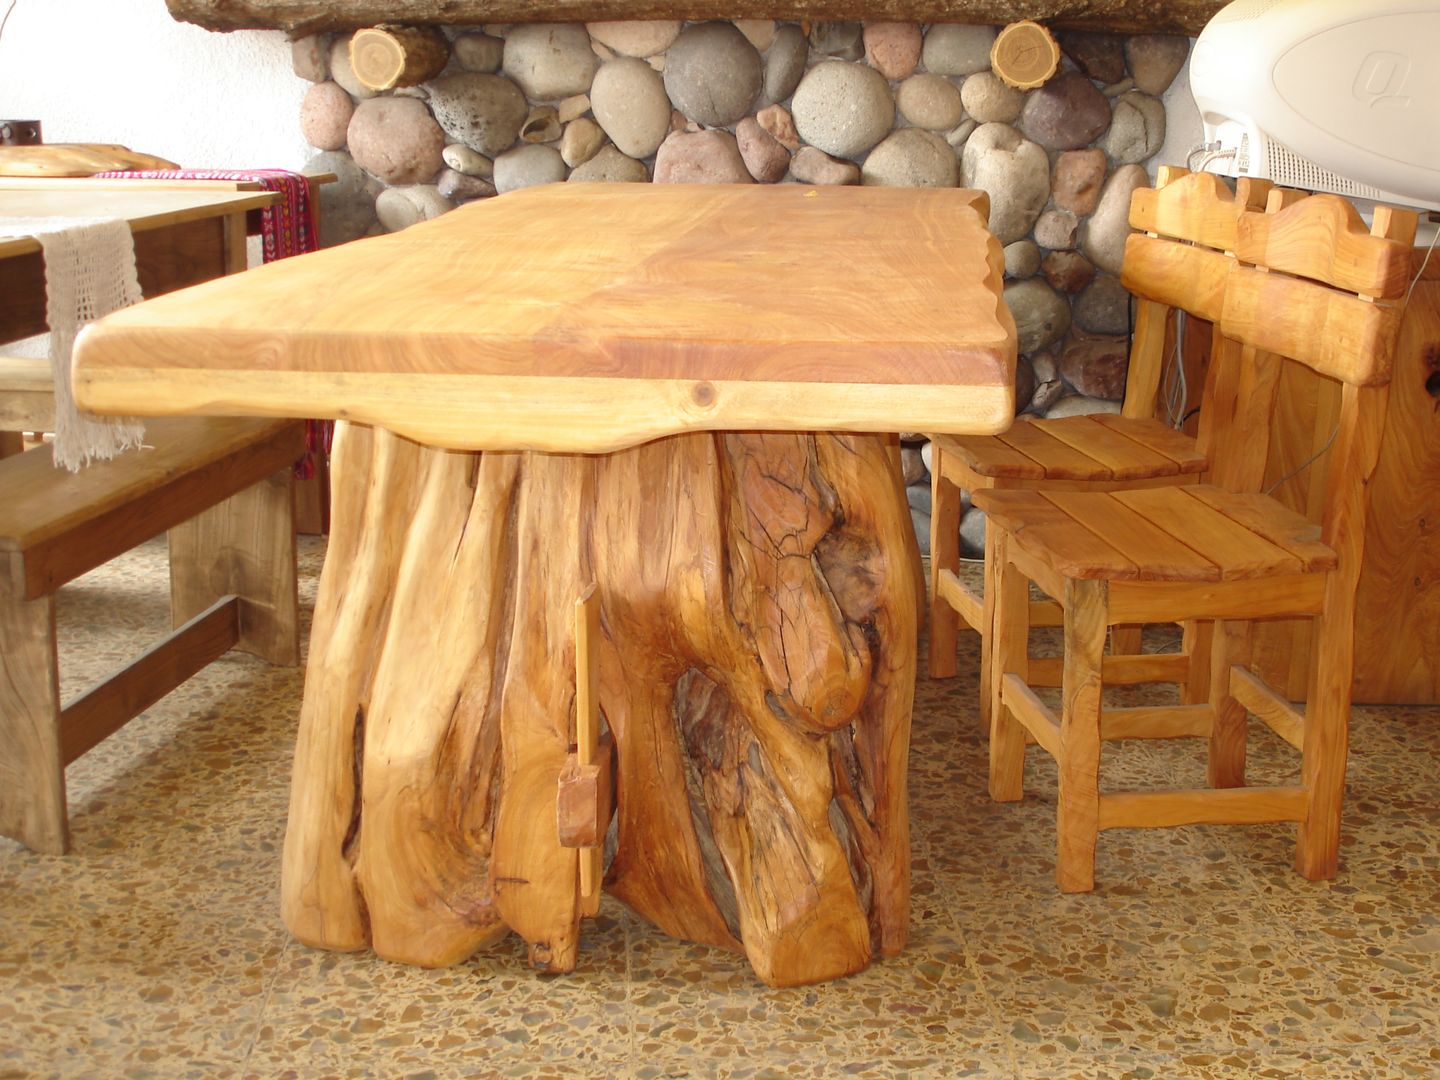 Mesas de madera maciza, Enrique Ramirez Muebles artesanales Enrique Ramirez Muebles artesanales Dapur Gaya Rustic Parket Multicolored Tables & chairs